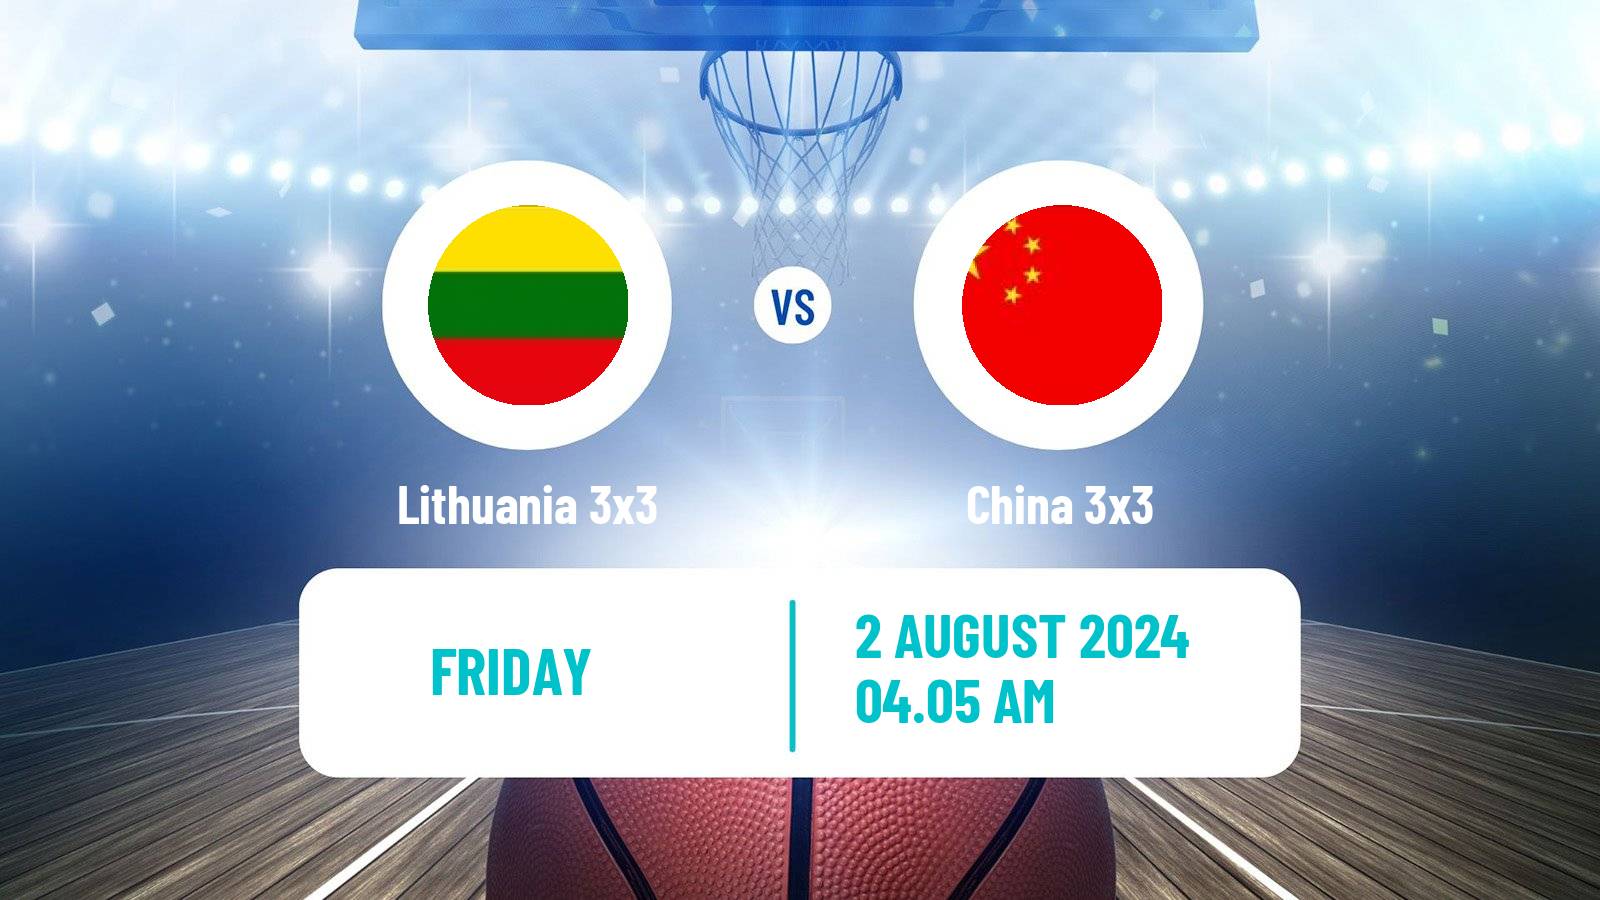 Basketball Olympic Games Basketball 3x3 Lithuania 3x3 - China 3x3